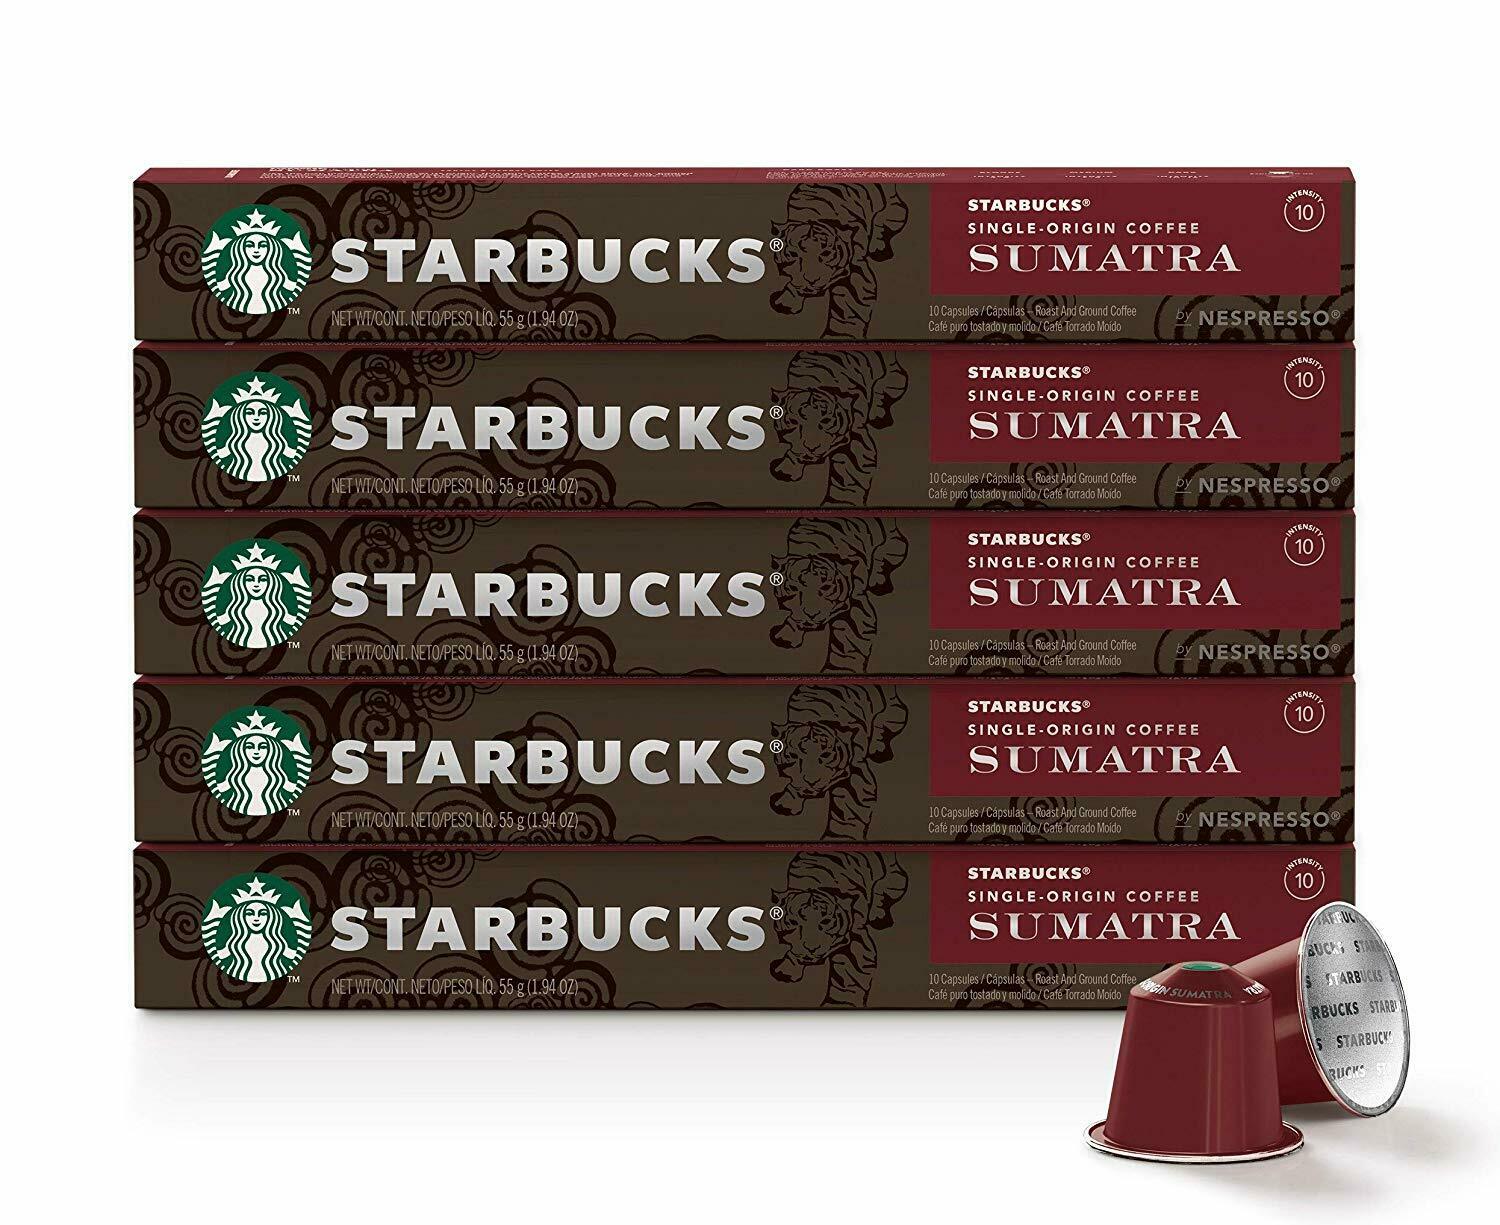 [ออกใบกำกับภาษีได้] Starbucks Capsule Nespresso กาแฟแคปซูล สตาร์บัคส์ ใช้กับเครื่องชงกาแฟ Nespresso, Xiaomi ของแท้ ส่งเร็ว  flavour Sumatra